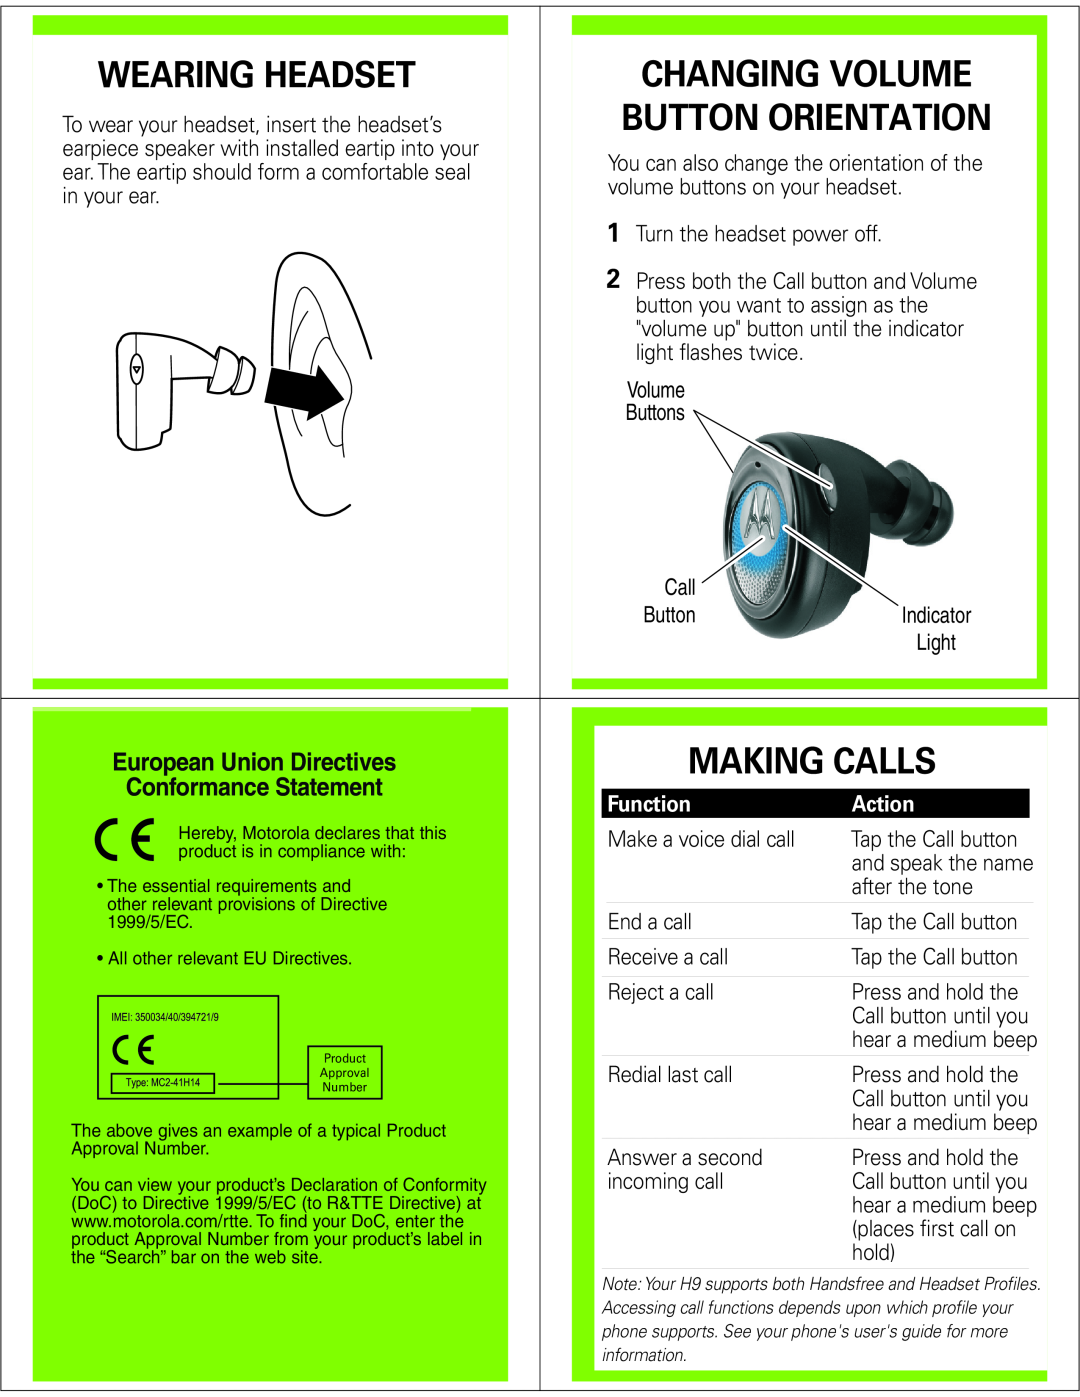 Motorola H9 manual Wearing Headset, Making Calls, Changing Volume, Button Orientation, European Union Directives 